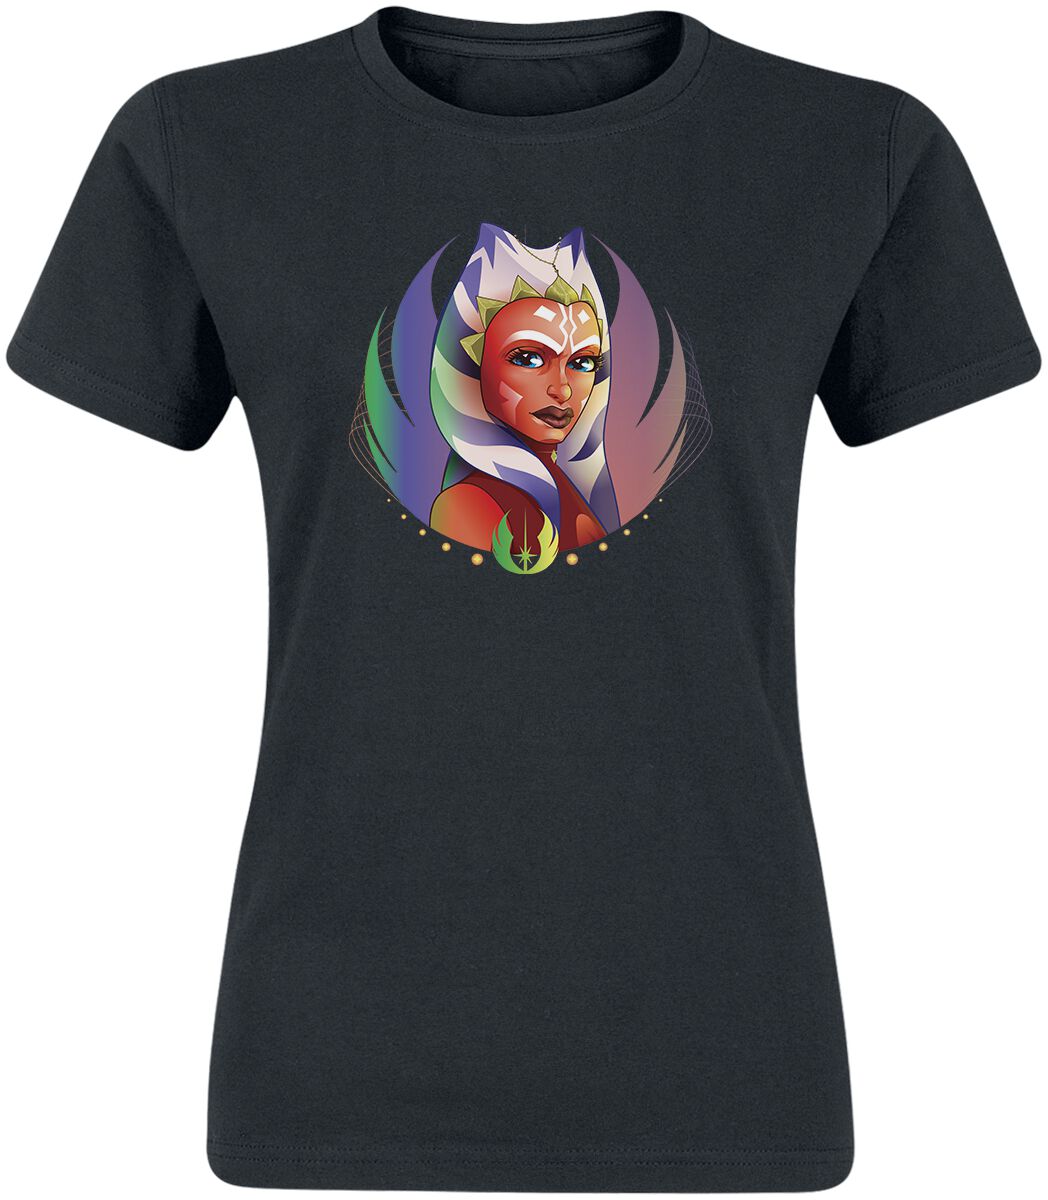 T-Shirt Manches courtes de Star Wars - Ahsoka - S à XXL - pour Femme - noir